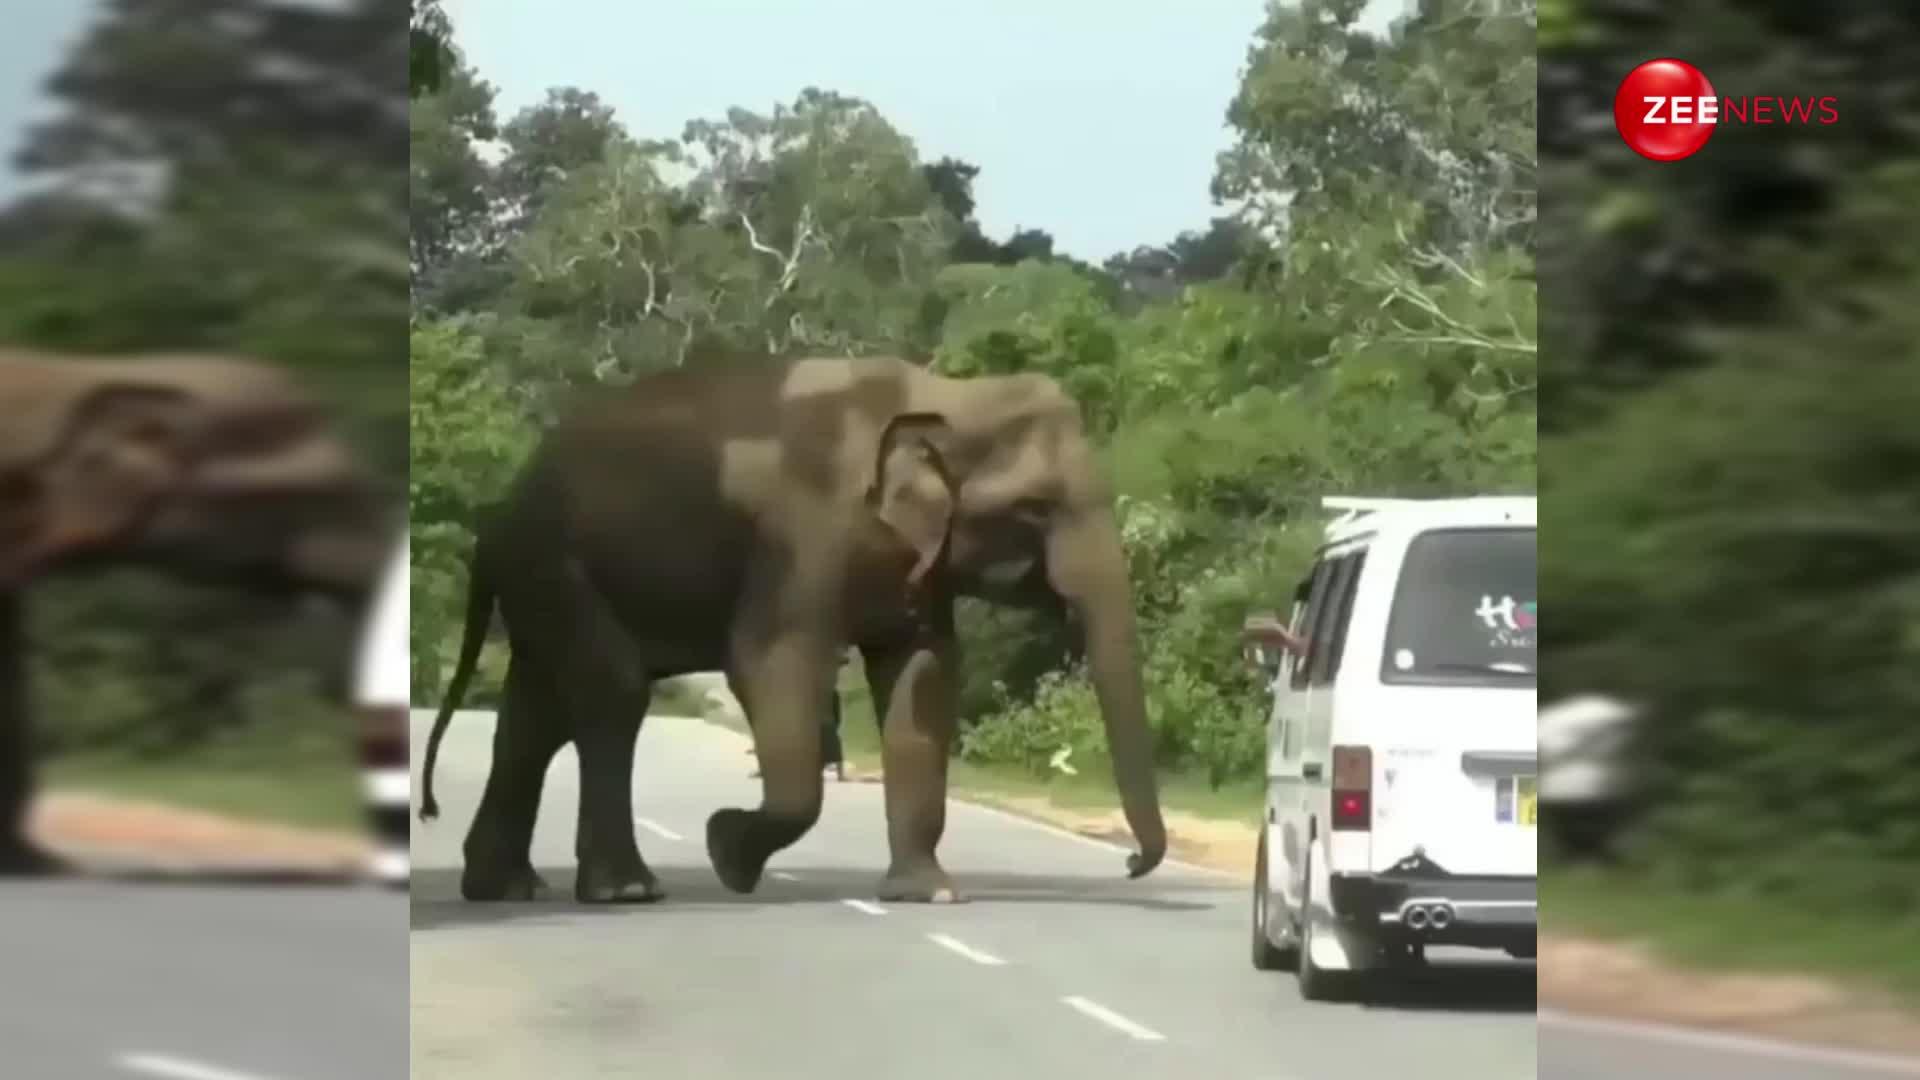 पूरा परिवार जा रहा था गांव, गुस्सैल हाथी ने गाड़ी पर किया हमला, खिड़की से कूदकर मुश्किल से बचाई सबने जान